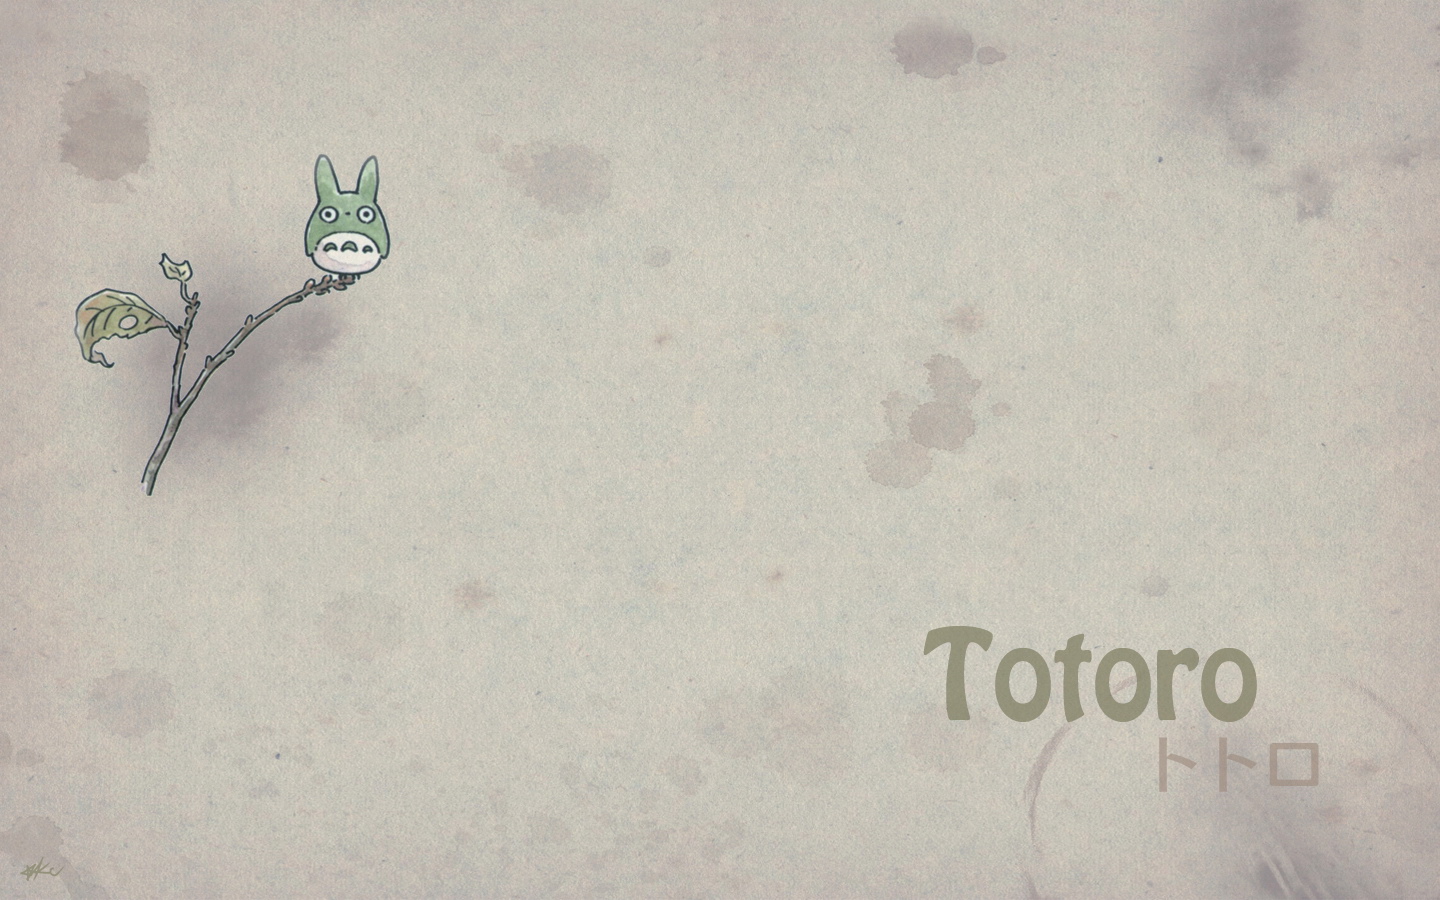 壁纸1440x900Totoro 龙猫 手绘简约版 壁纸3壁纸 Totoro（龙猫）壁纸 Totoro（龙猫）图片 Totoro（龙猫）素材 绘画壁纸 绘画图库 绘画图片素材桌面壁纸